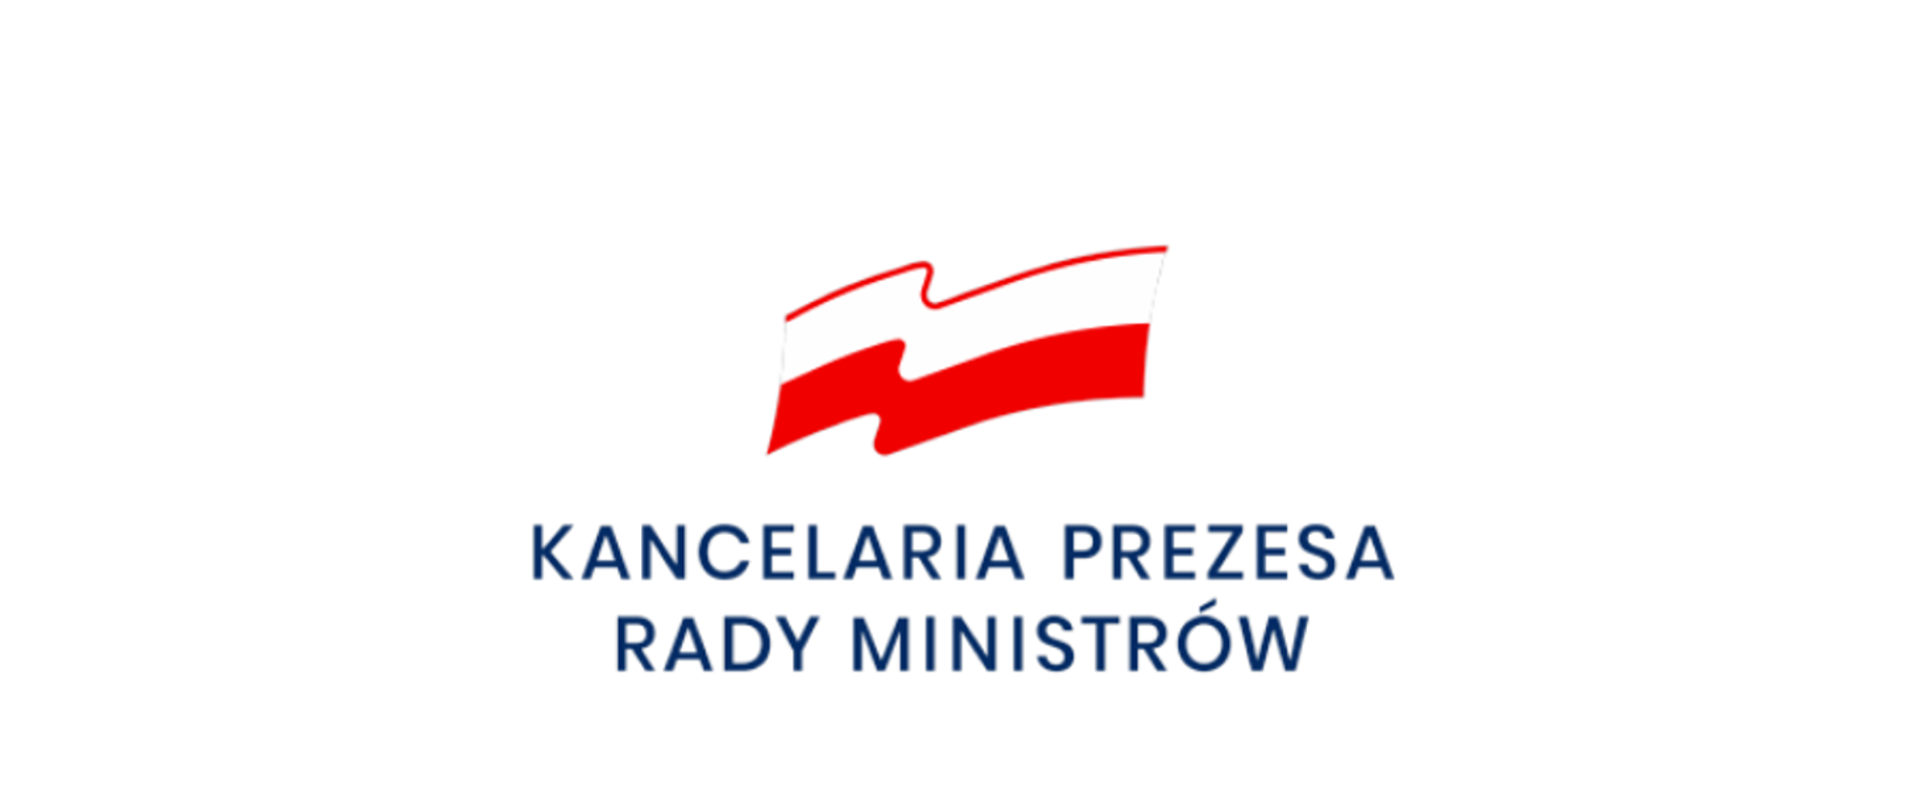 Logotyp Kancelarii Prezesa Rady Ministrów